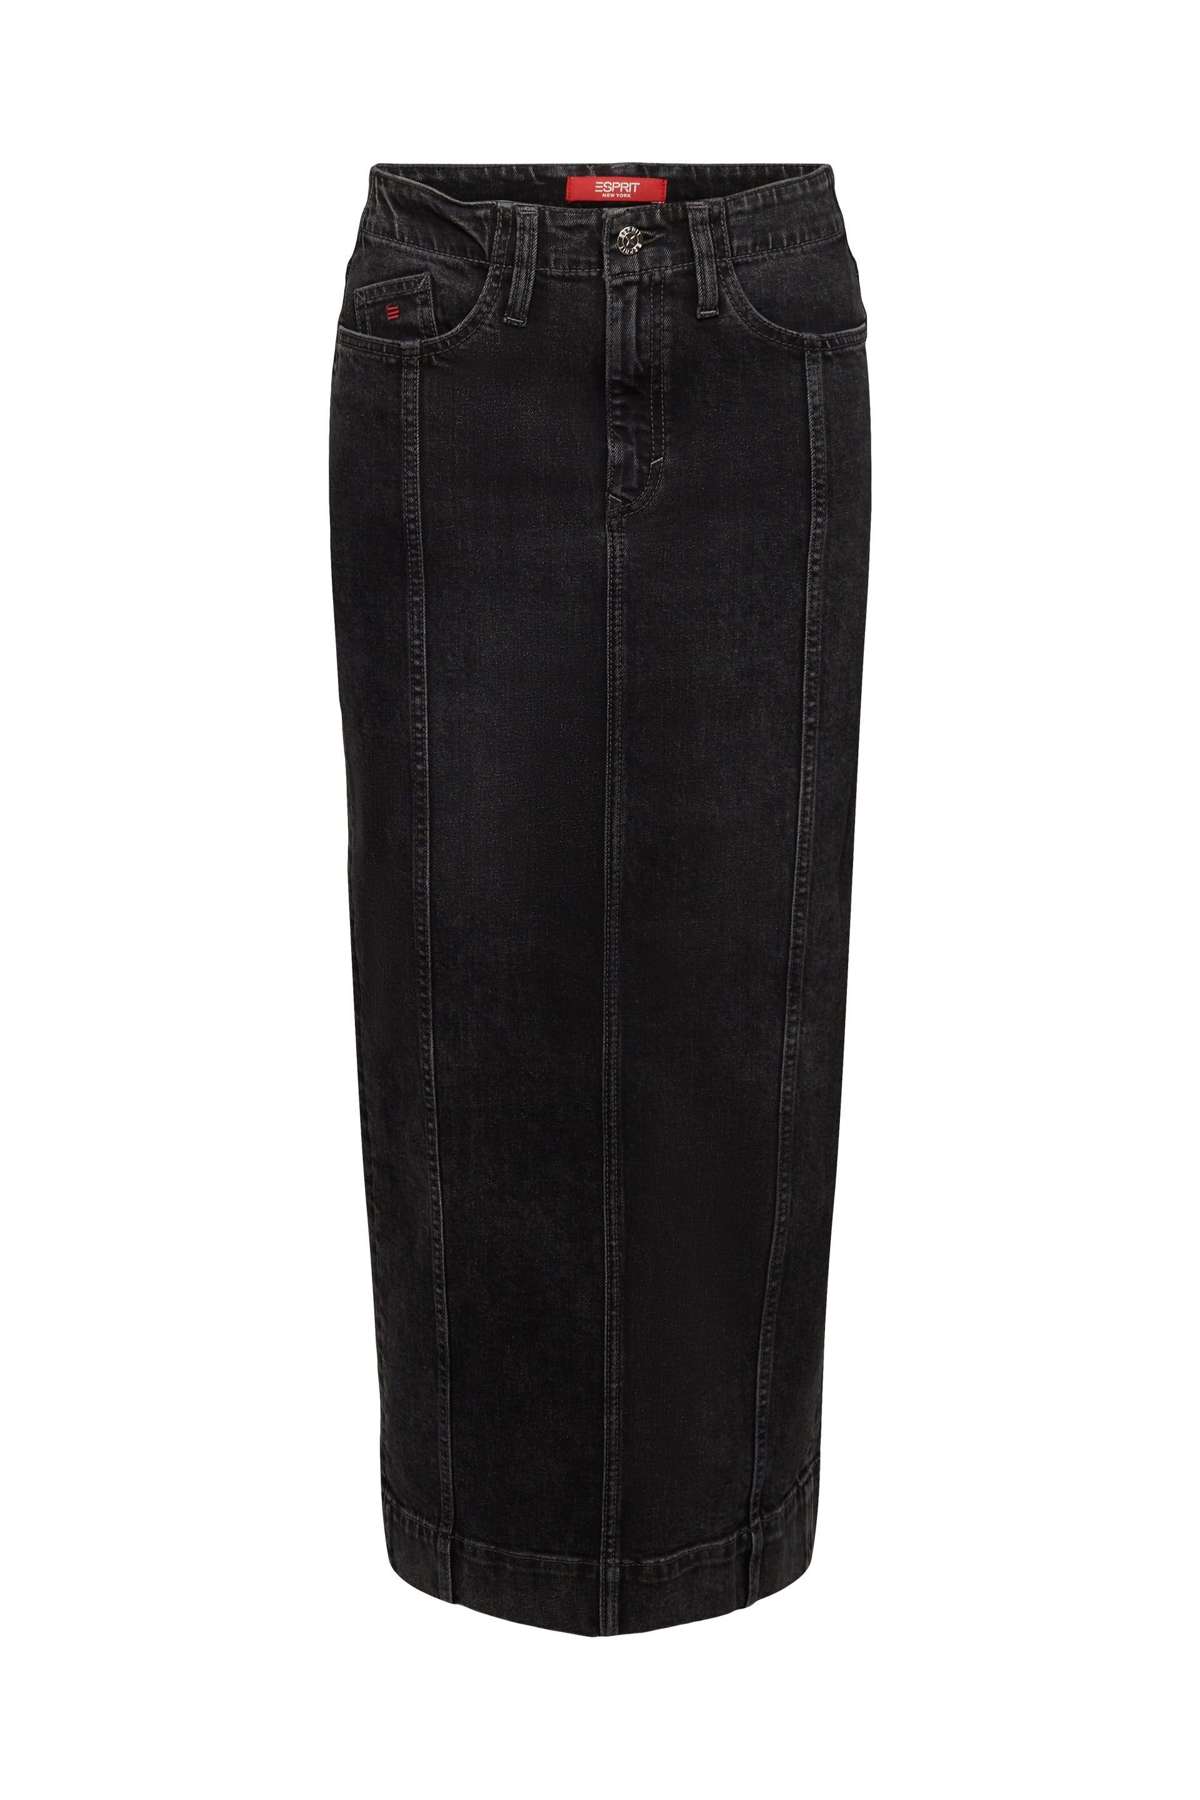 Джинсовая юбка джинсовая юбка макси